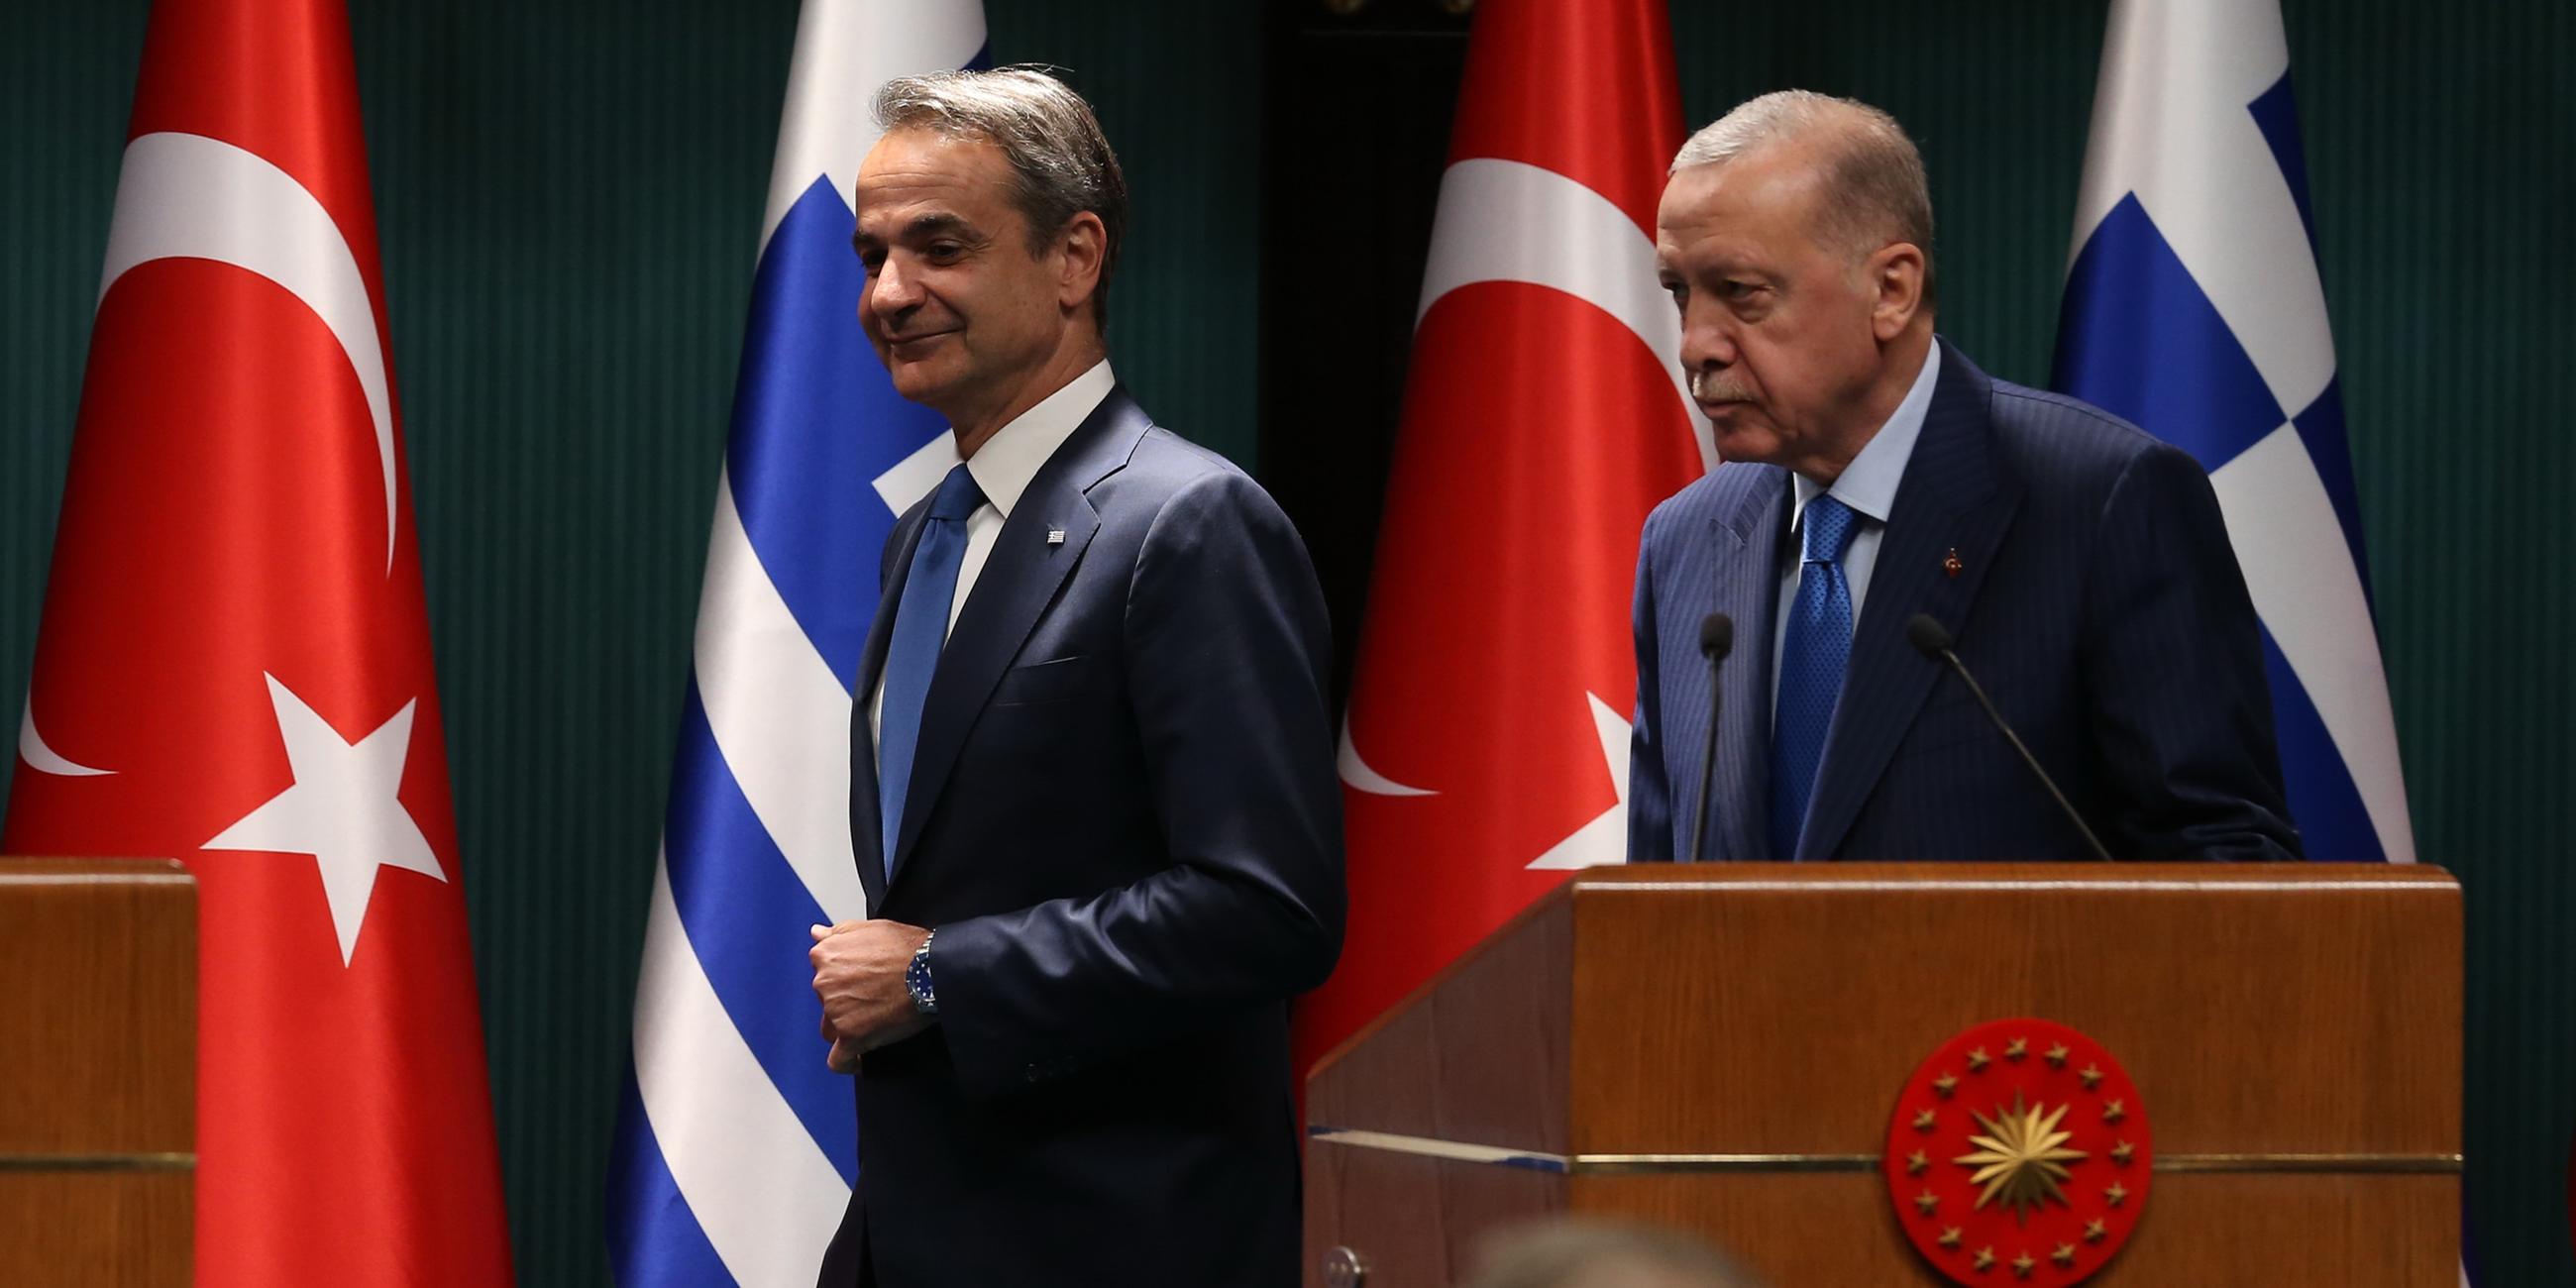 Der türkische Präsident Recep Tayyip Erdogan und der griechische Premierminister Kyriakos Mitsotakis gaben nach ihrem Treffen im Präsidentenpalast in Ankara eine Pressekonferenz.